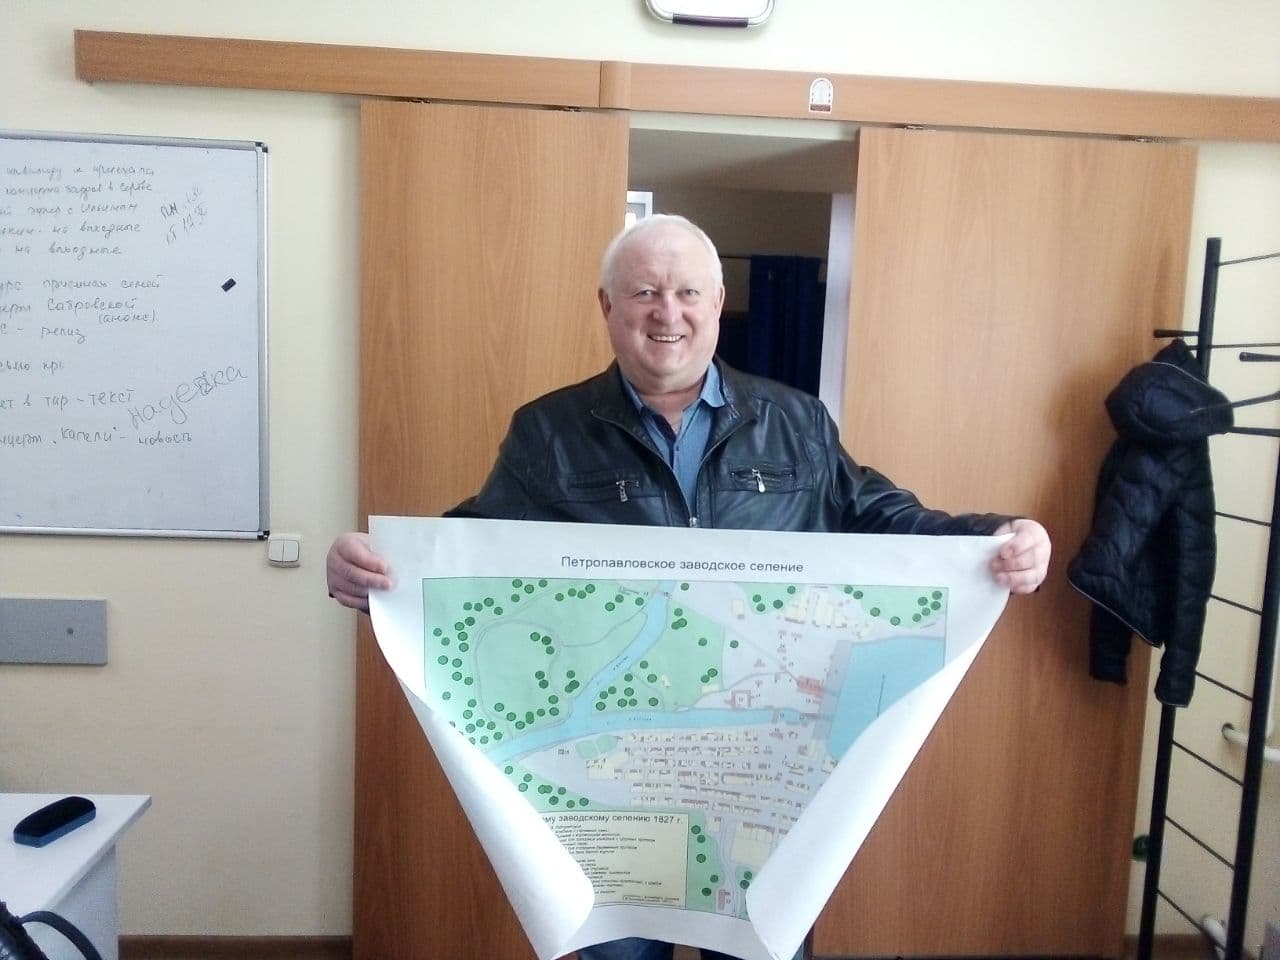 В школах города появятся карты Петропавловского заводского селения